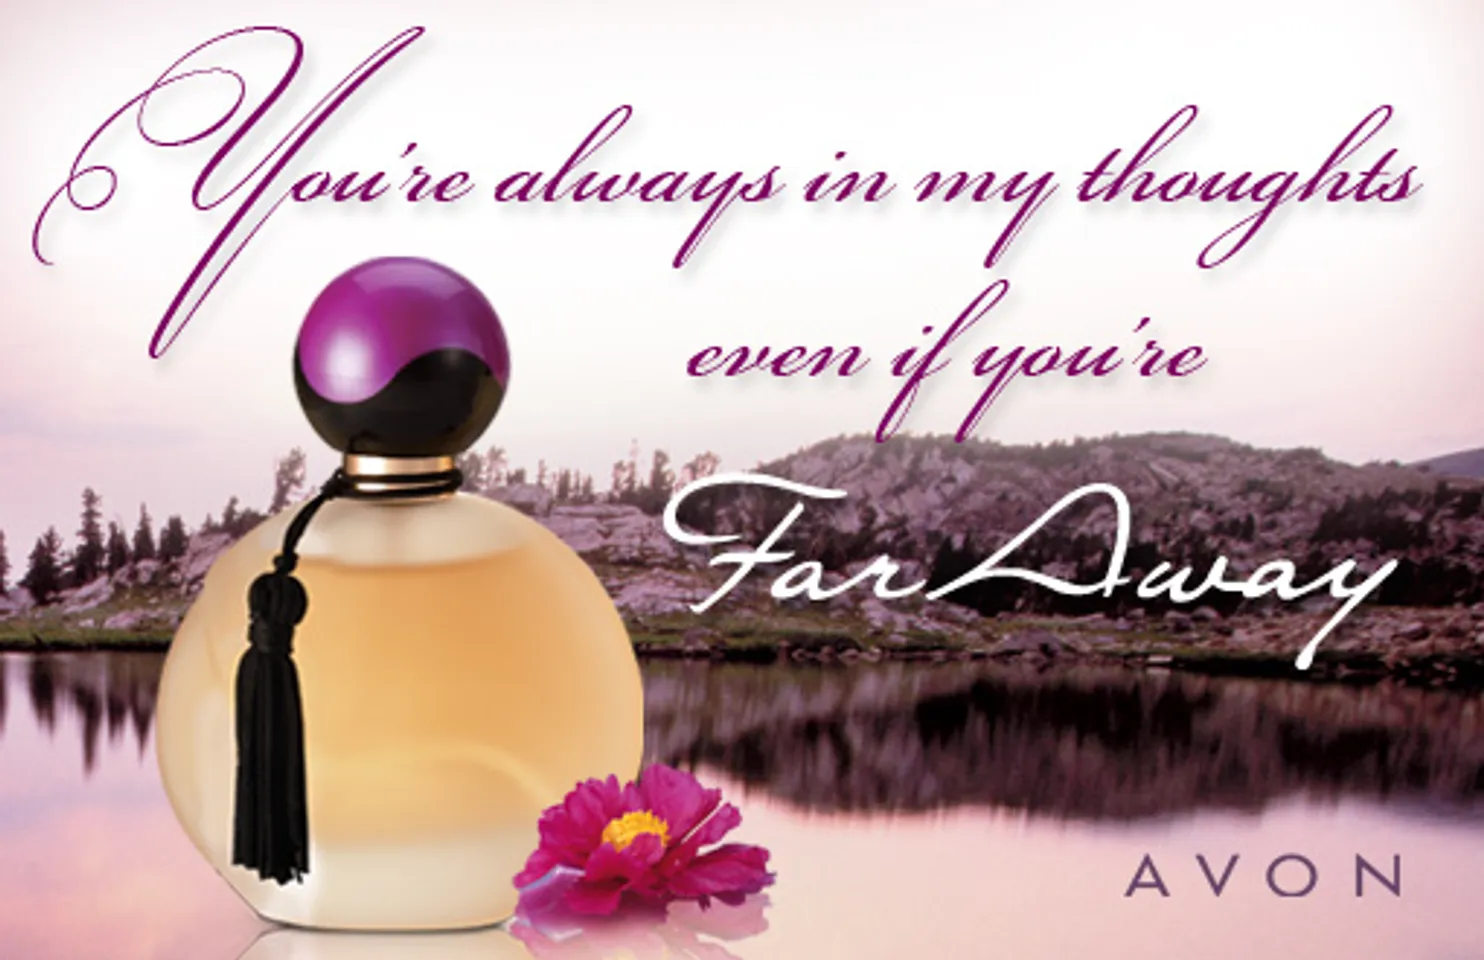 Nước hoa nữ Avon Far Away được biết đến như viên ngọc quý của Avon mang hương thơm nồng nàn